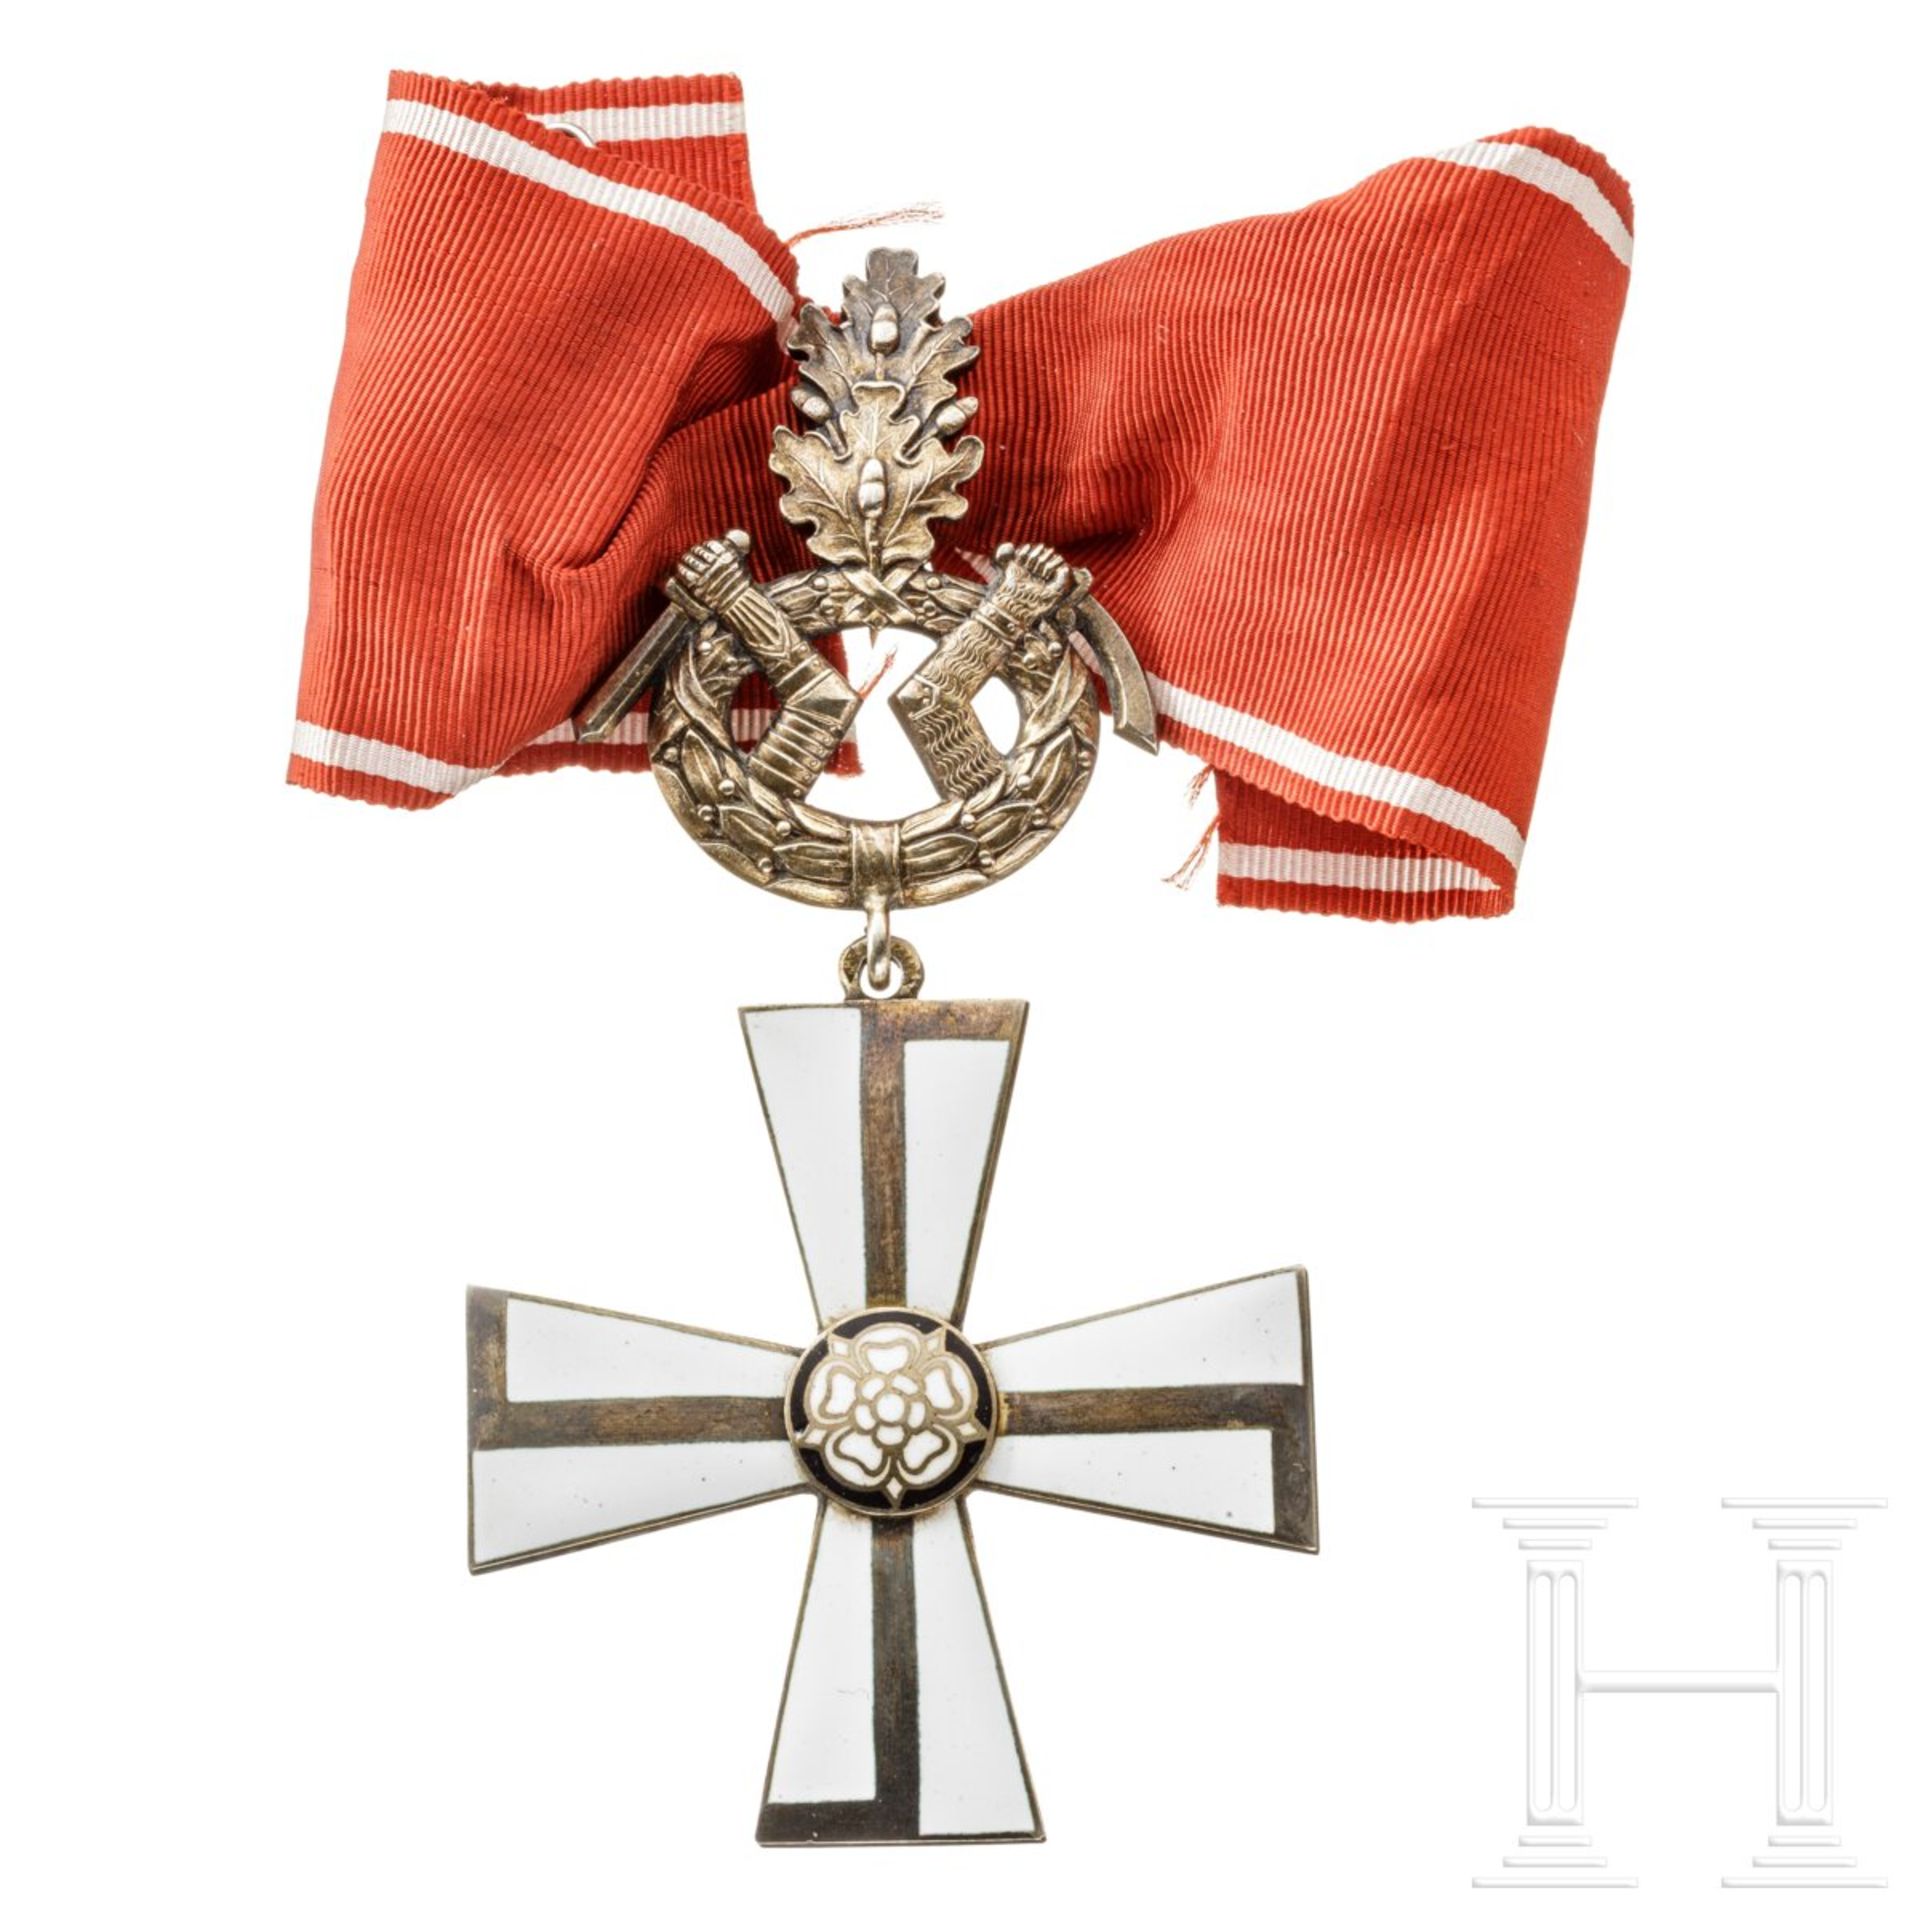 Finnischer Orden des Freiheitskreuzes - Kreuz 1. Klasse mit Eichenlaub und Schwertern - Image 2 of 8